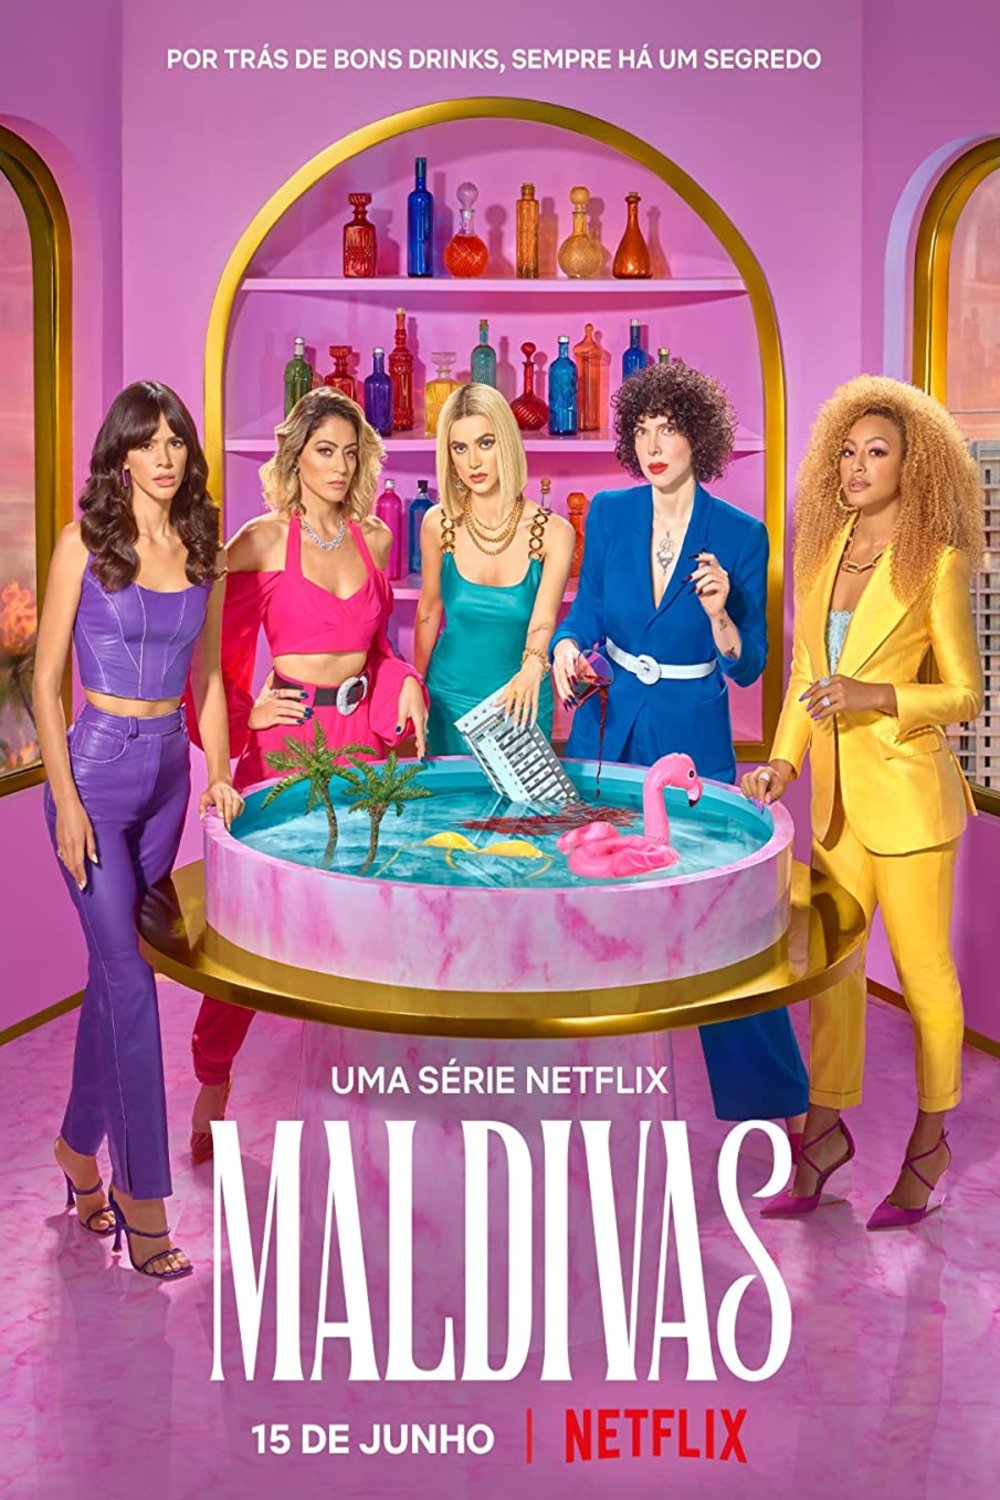 Portuguese poster of the movie Maldivas